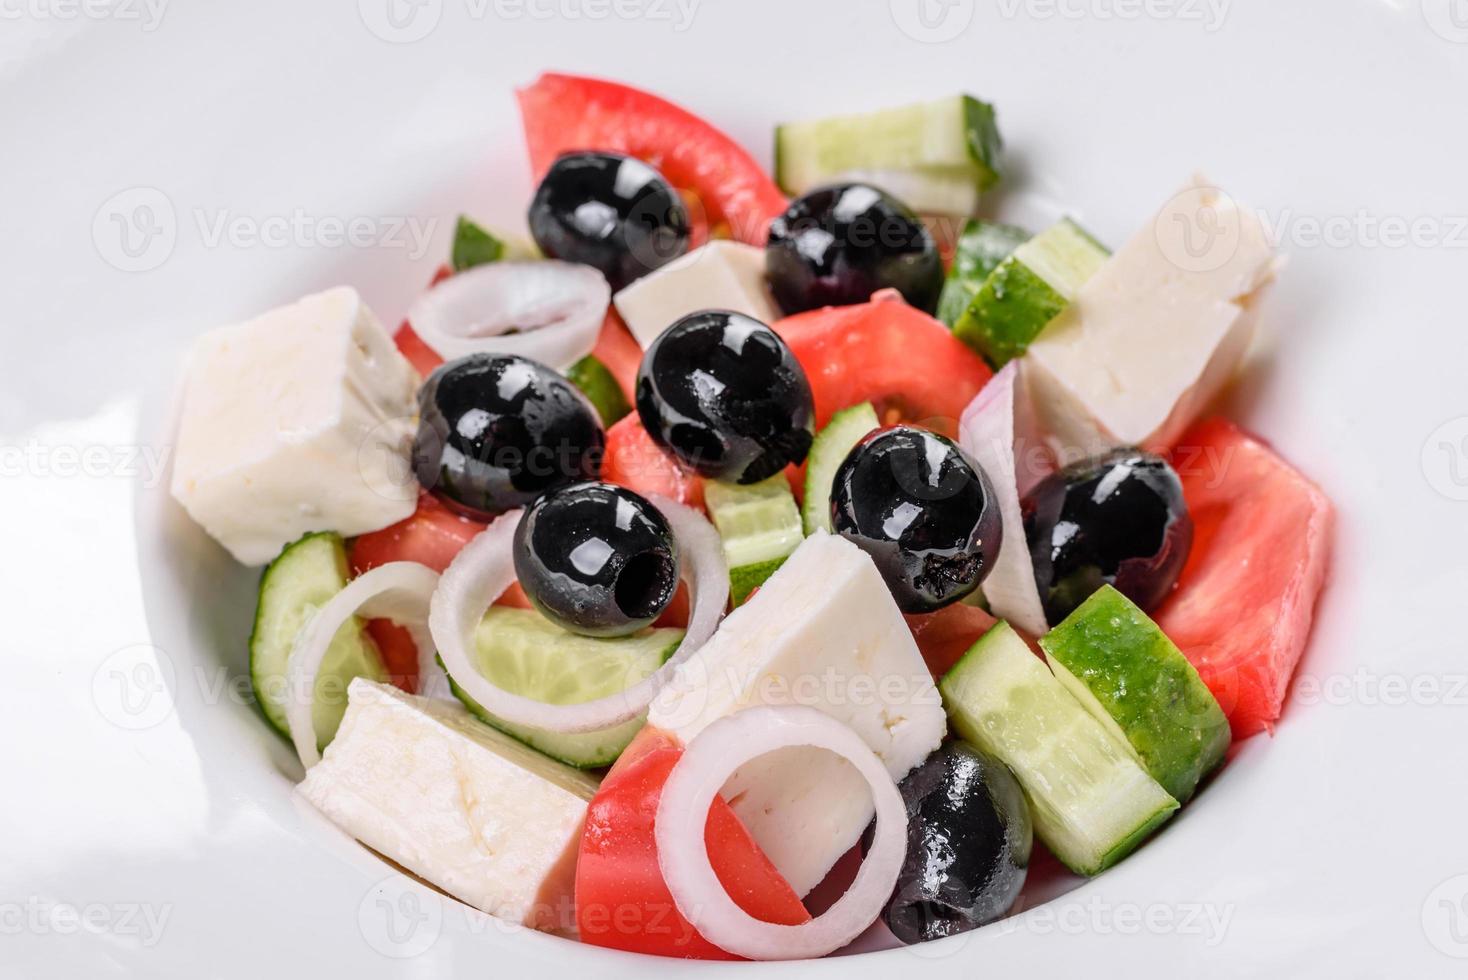 délicieuse salade grecque fraîche avec tomate, concombre, oignons et olives à l'huile d'olive photo